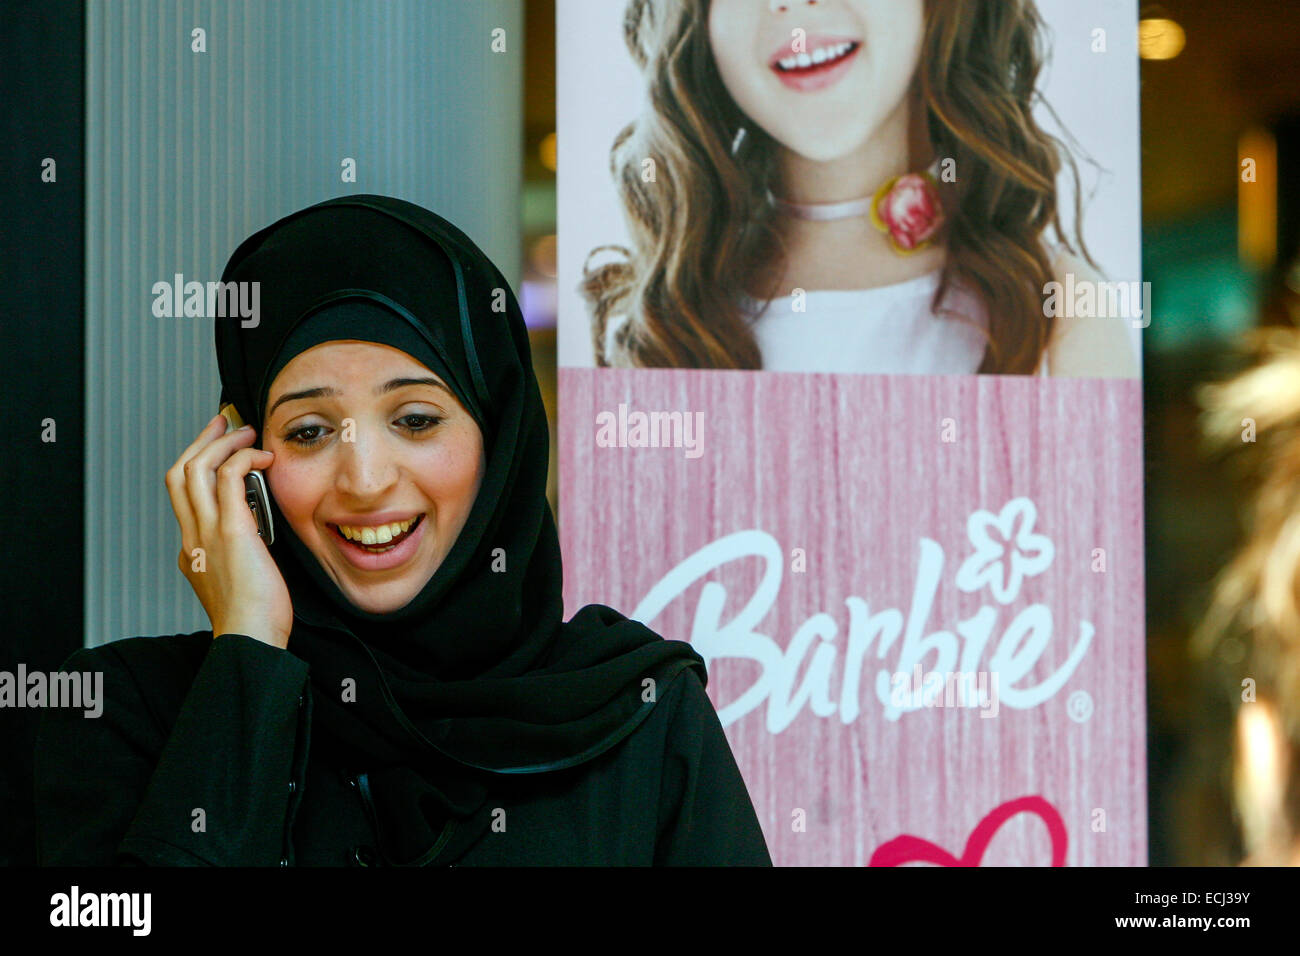 Jeune femme musulmane en foulard noir appelant téléphone mobile, hijab femme, fond dans la publicité sur la Barbie, Prague Tchèque République femme à la mode Banque D'Images